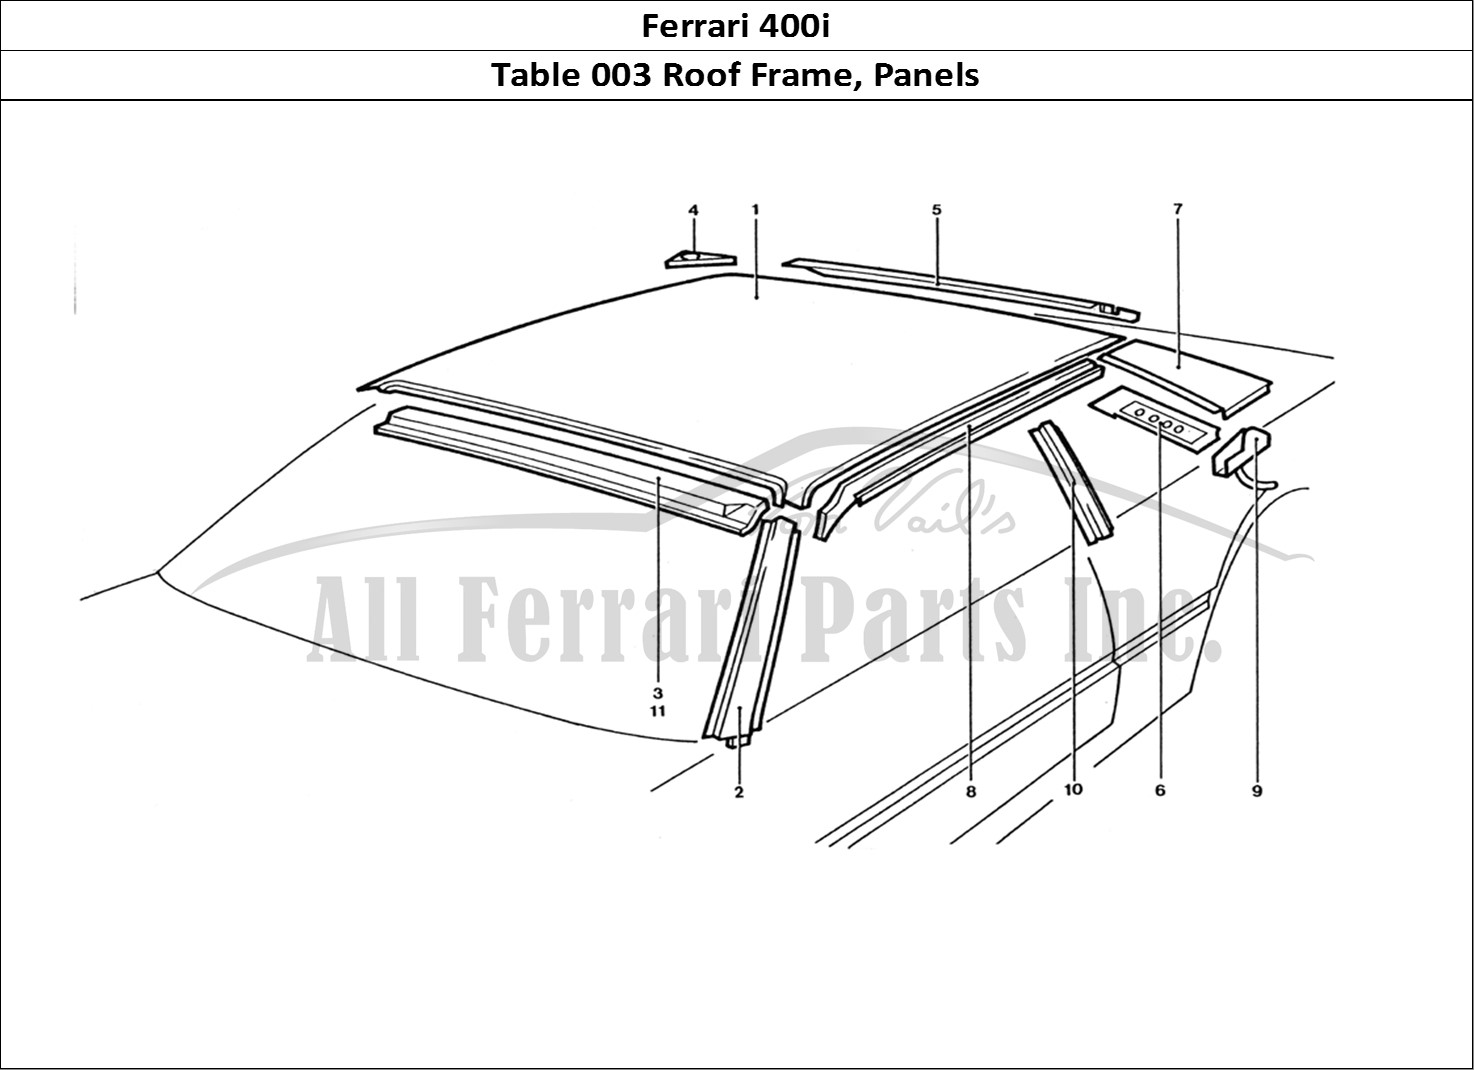 Ferrari Parts Ferrari 400 GT (Coachwork) Page 003 Roof Panels